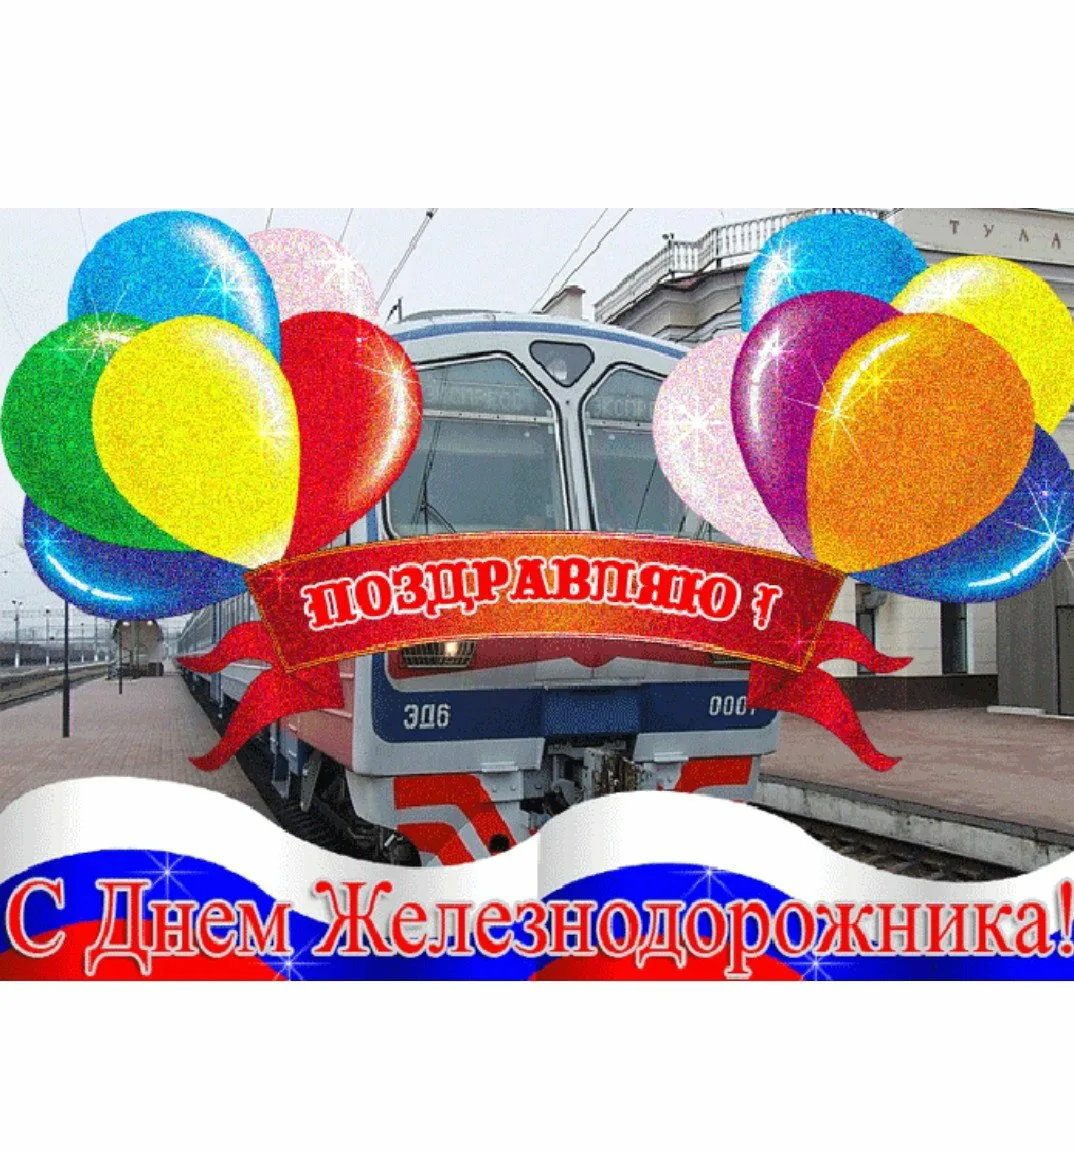 Фото Поздравление с днем железнодорожника Украины #63